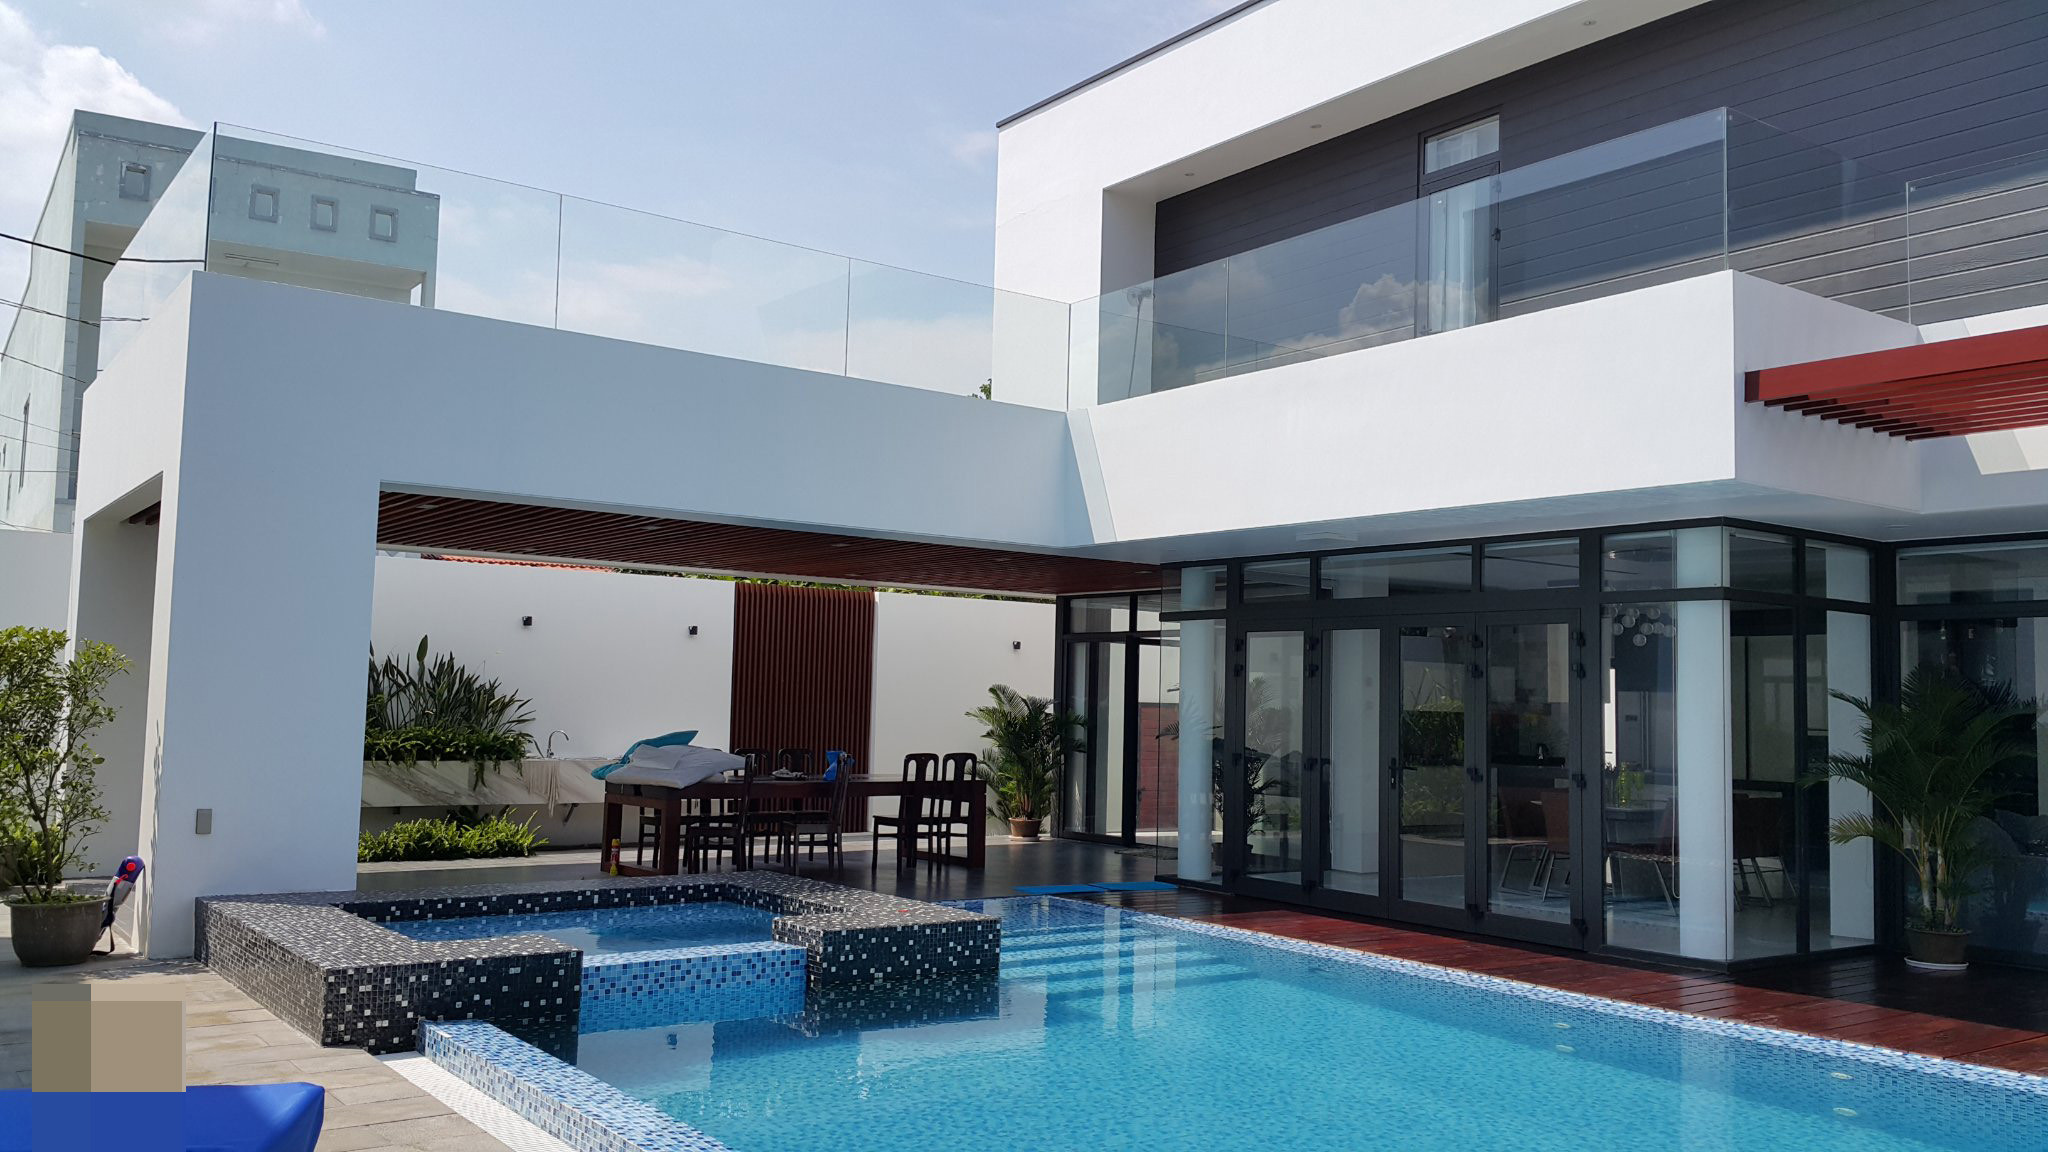 villa 809 - Villa hút hồn với không gian mở, sử dụng hồ bơi và bể sục tiện nghi